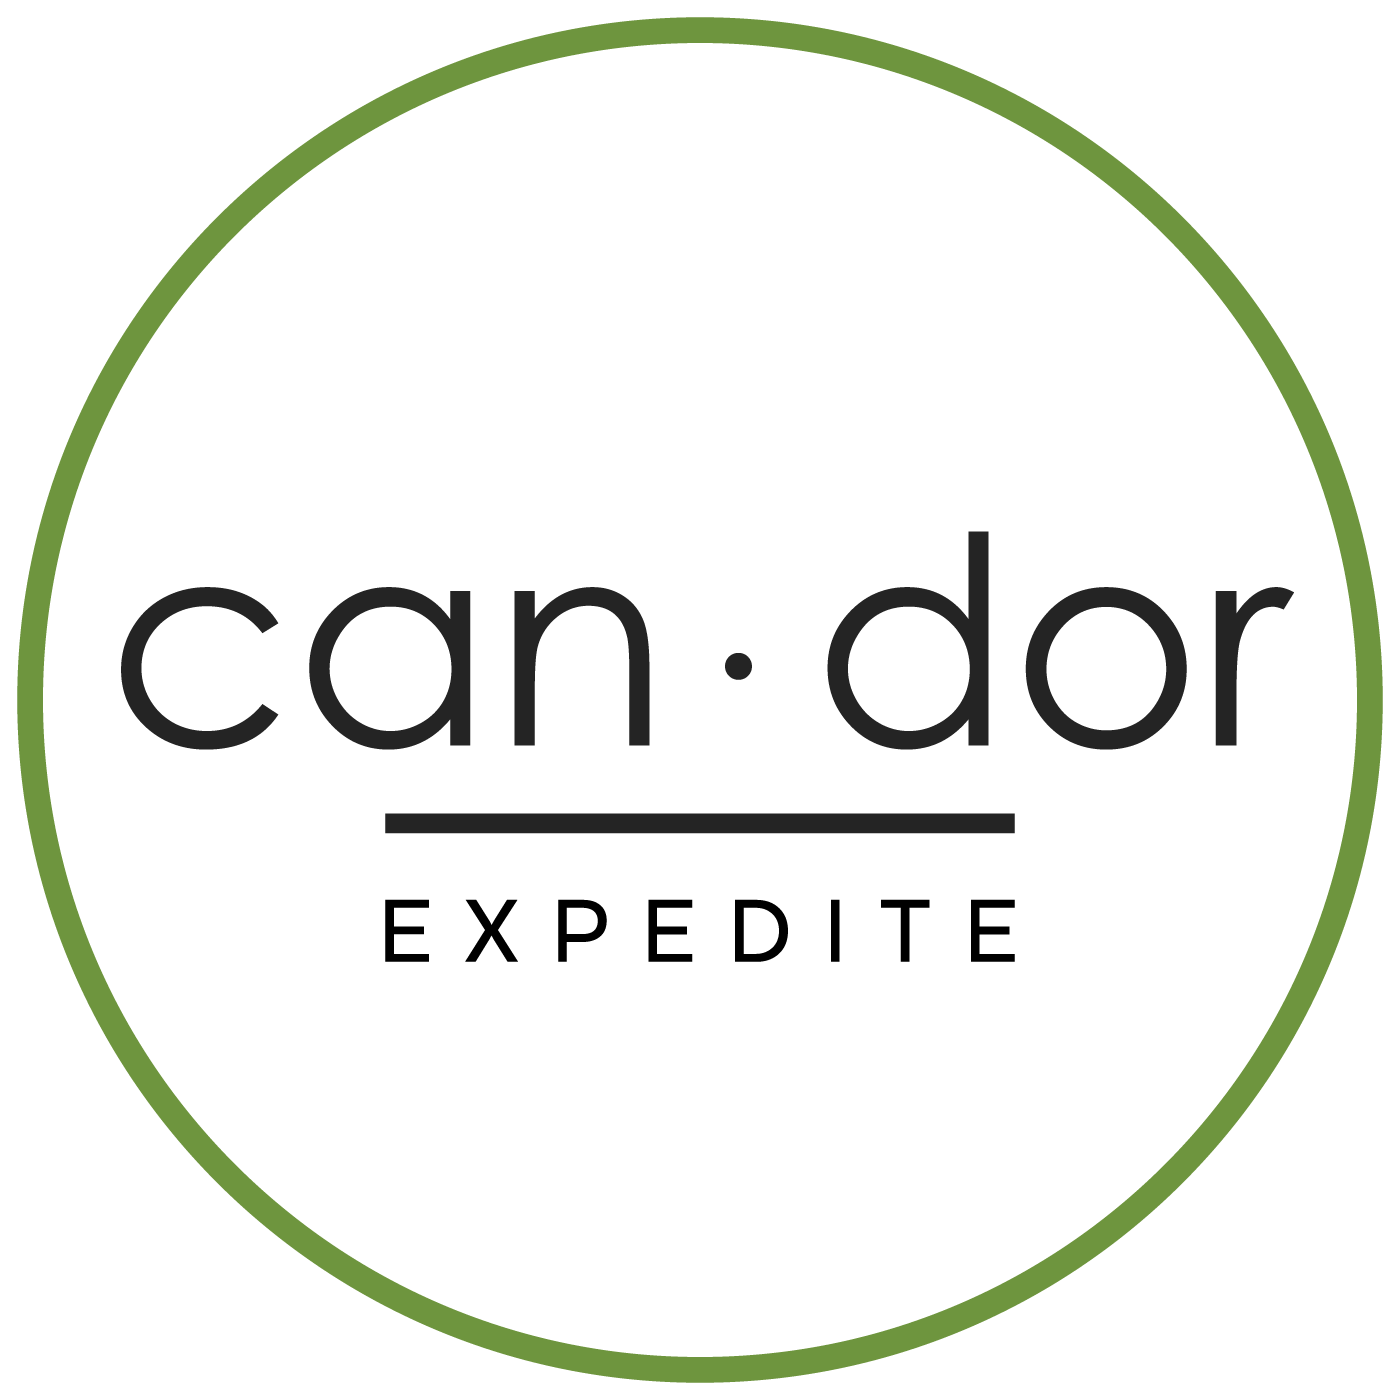 Candor Expedite